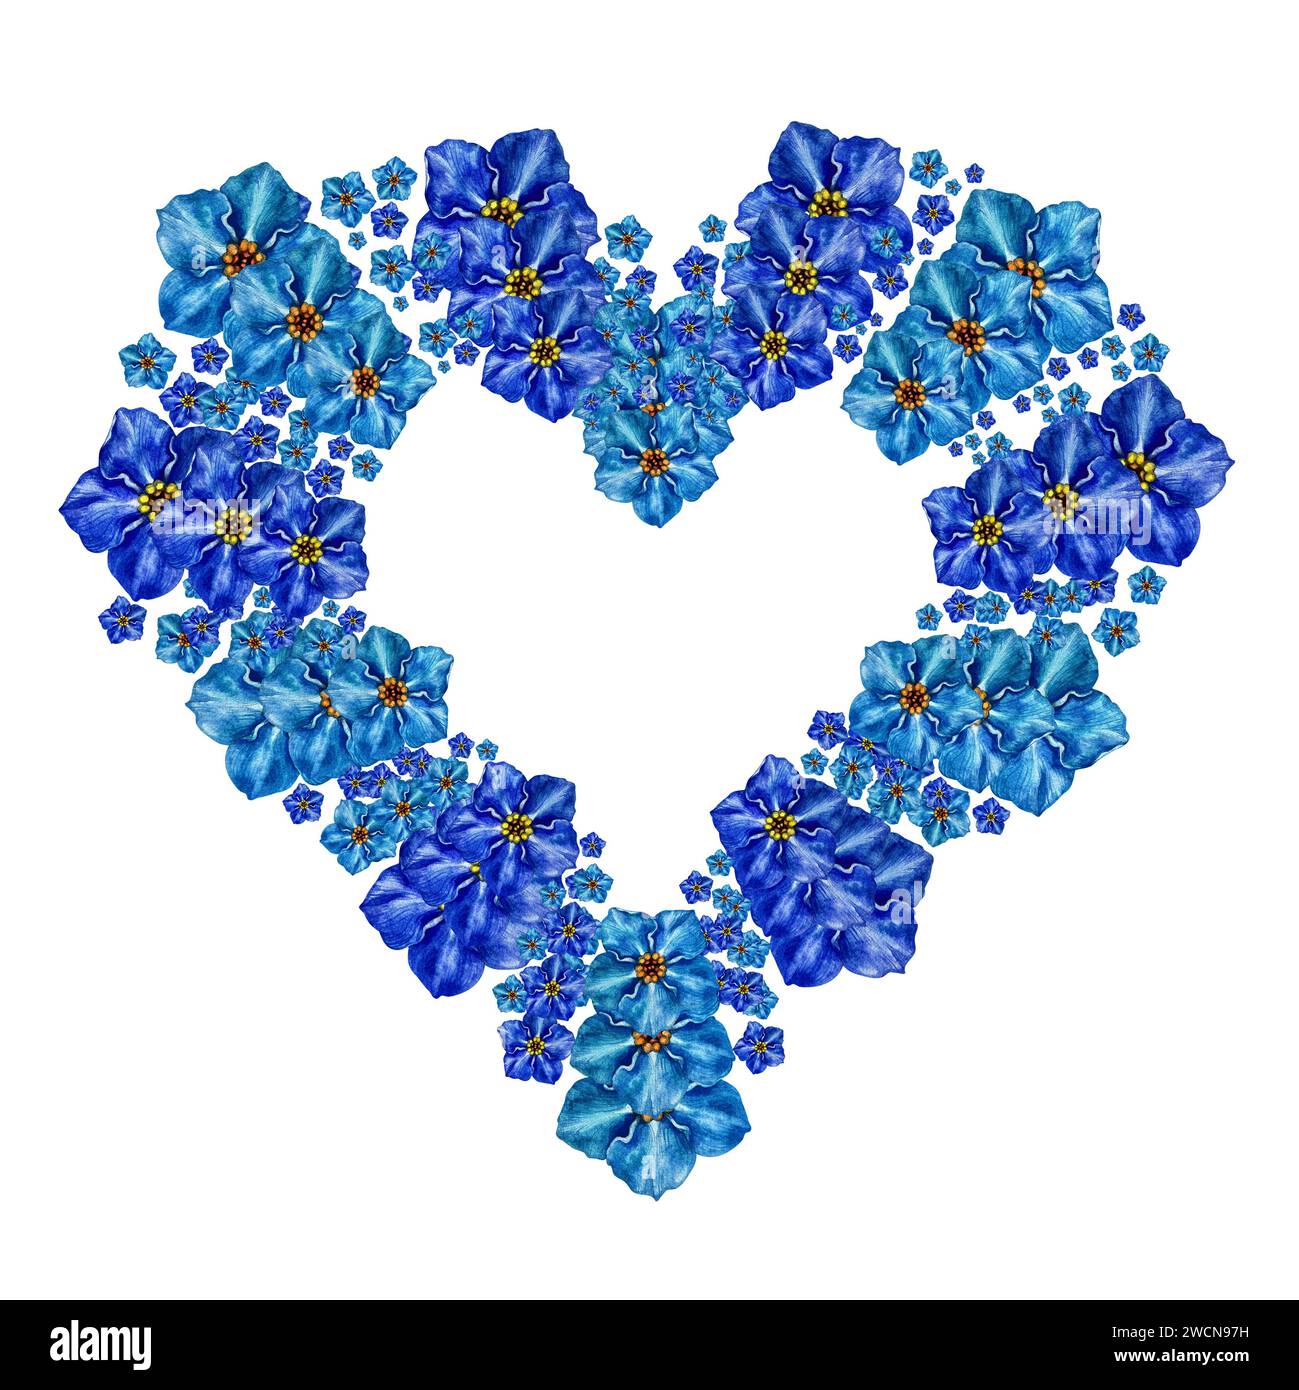 Cuore floreale blu con delicati Forget me Not fiori dipinti ad acquerello. Illustrazione della composizione floreale per inviti, stampe, biglietti di auguri Foto Stock